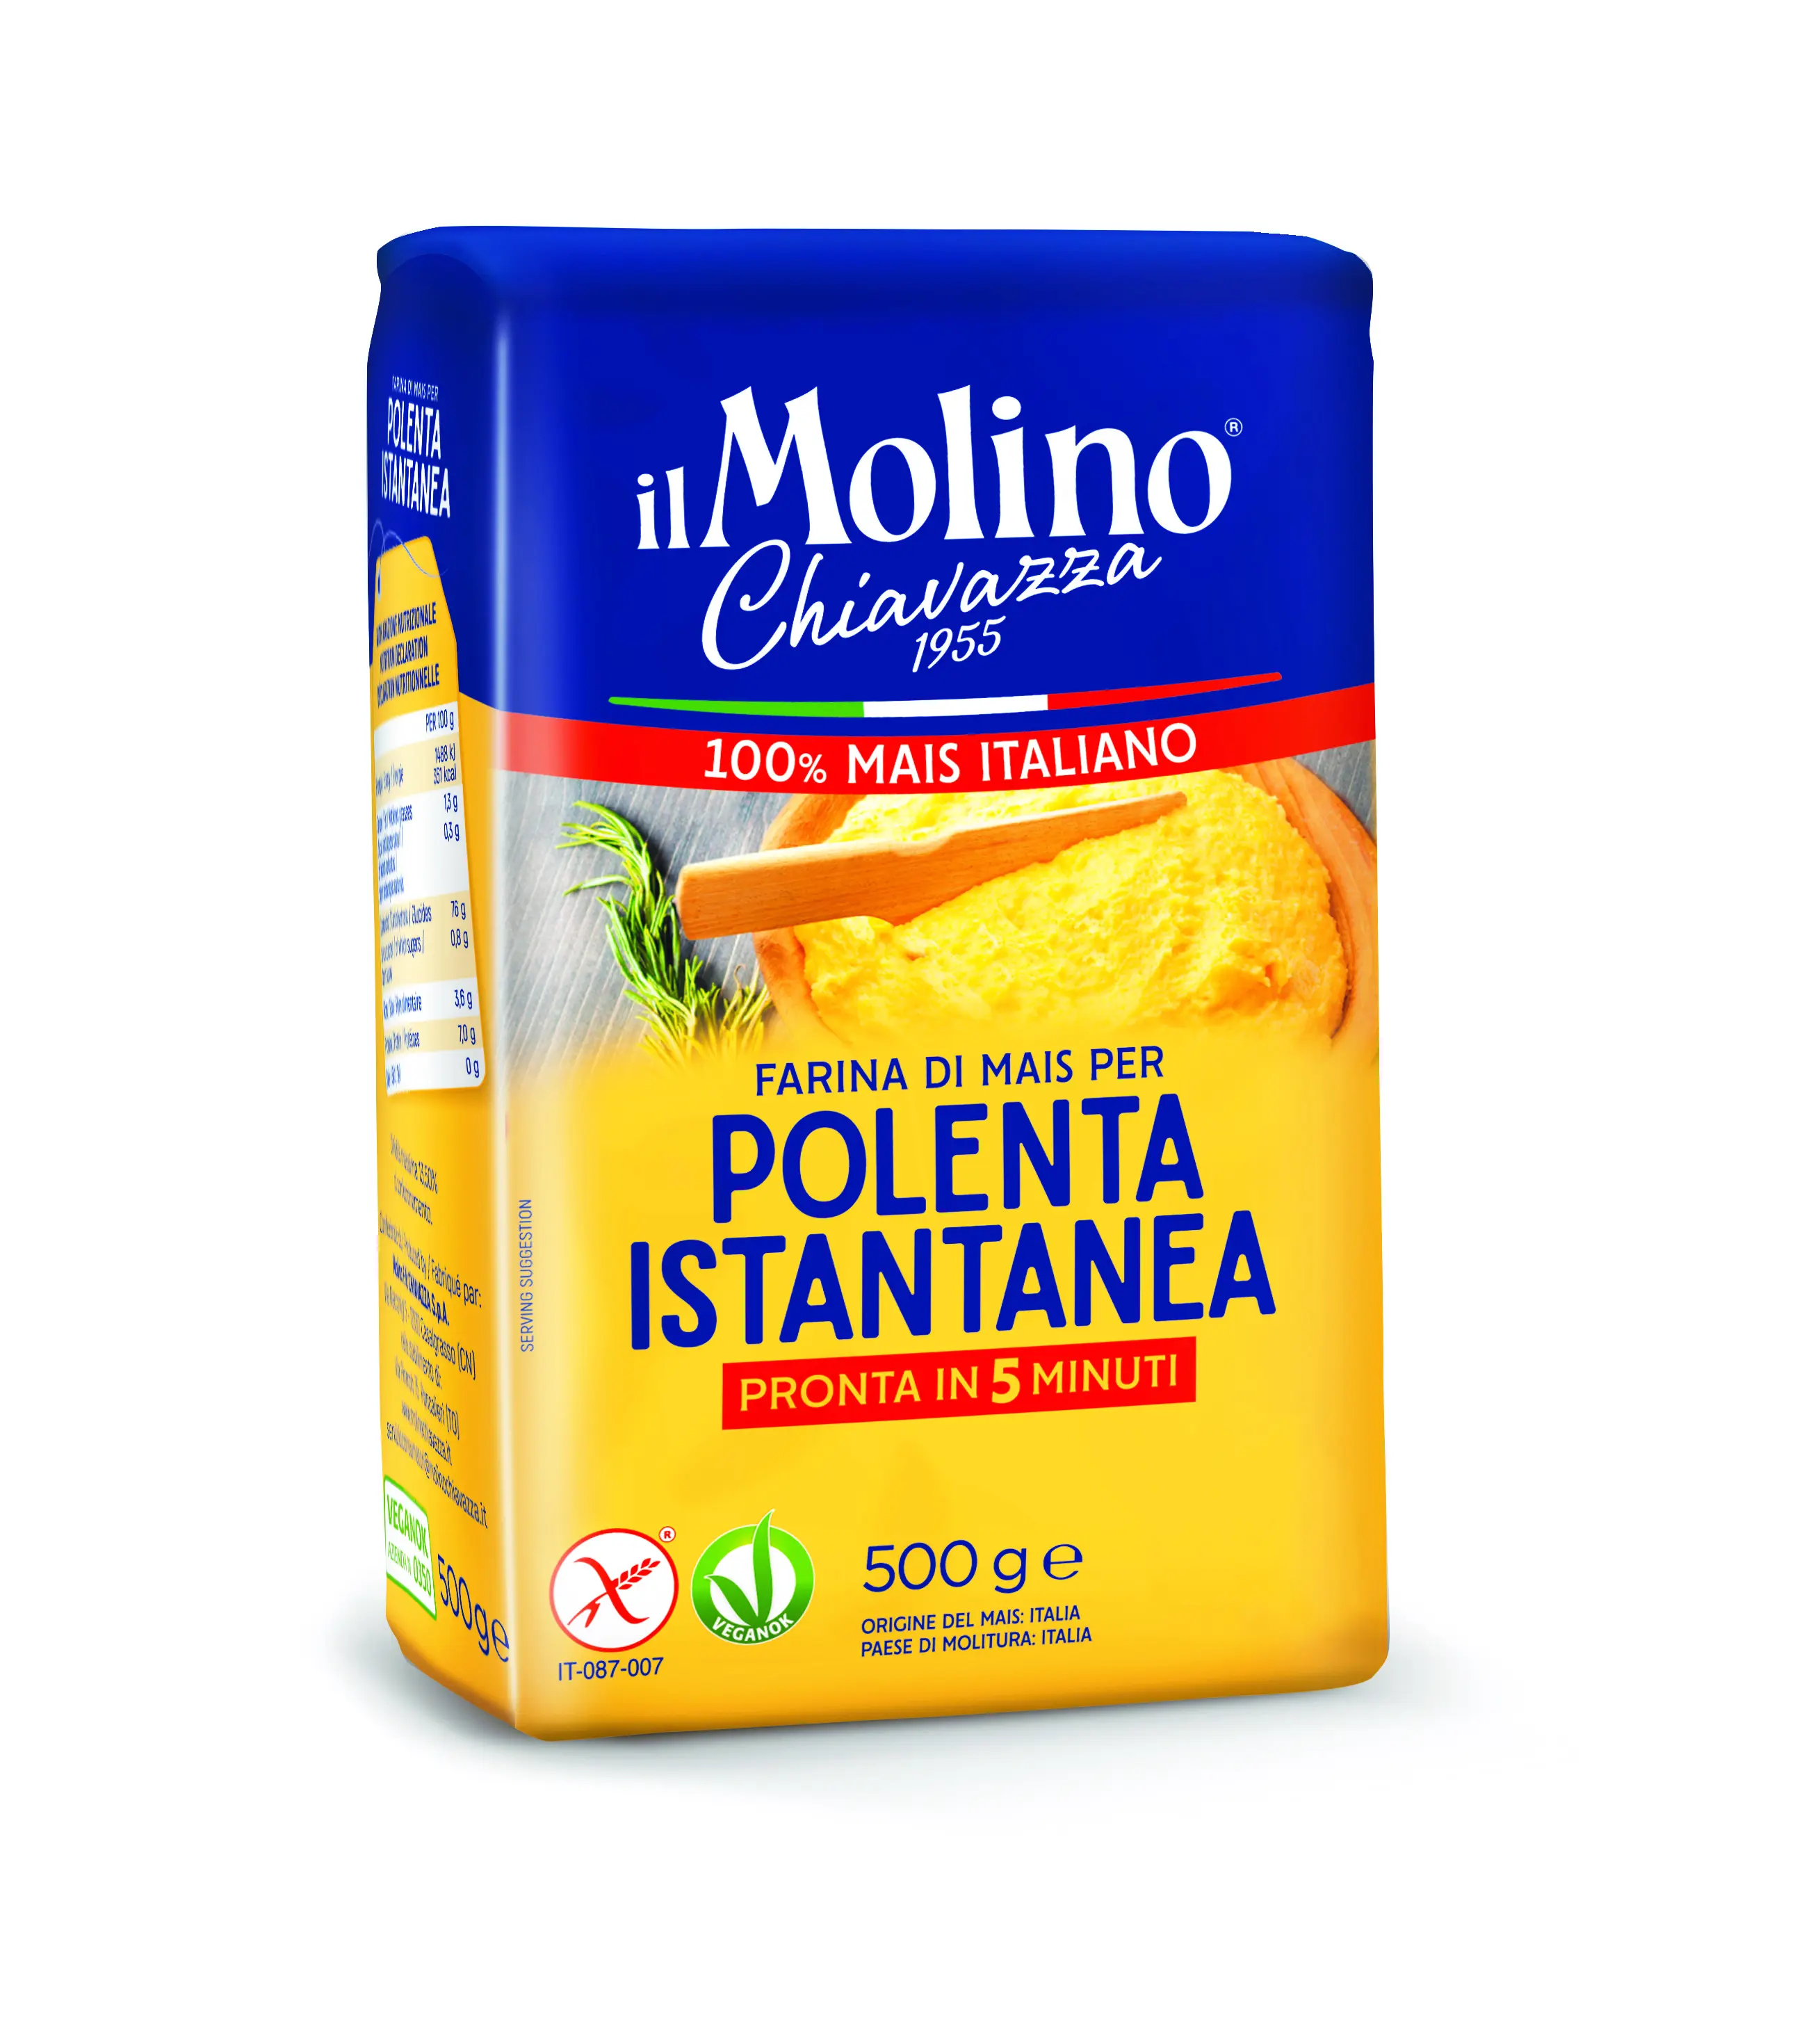 SEMOLINA jagung instan tepung alami kualitas tinggi 100% Ideal untuk penggunaan profesional buatan Italia siap untuk pengiriman